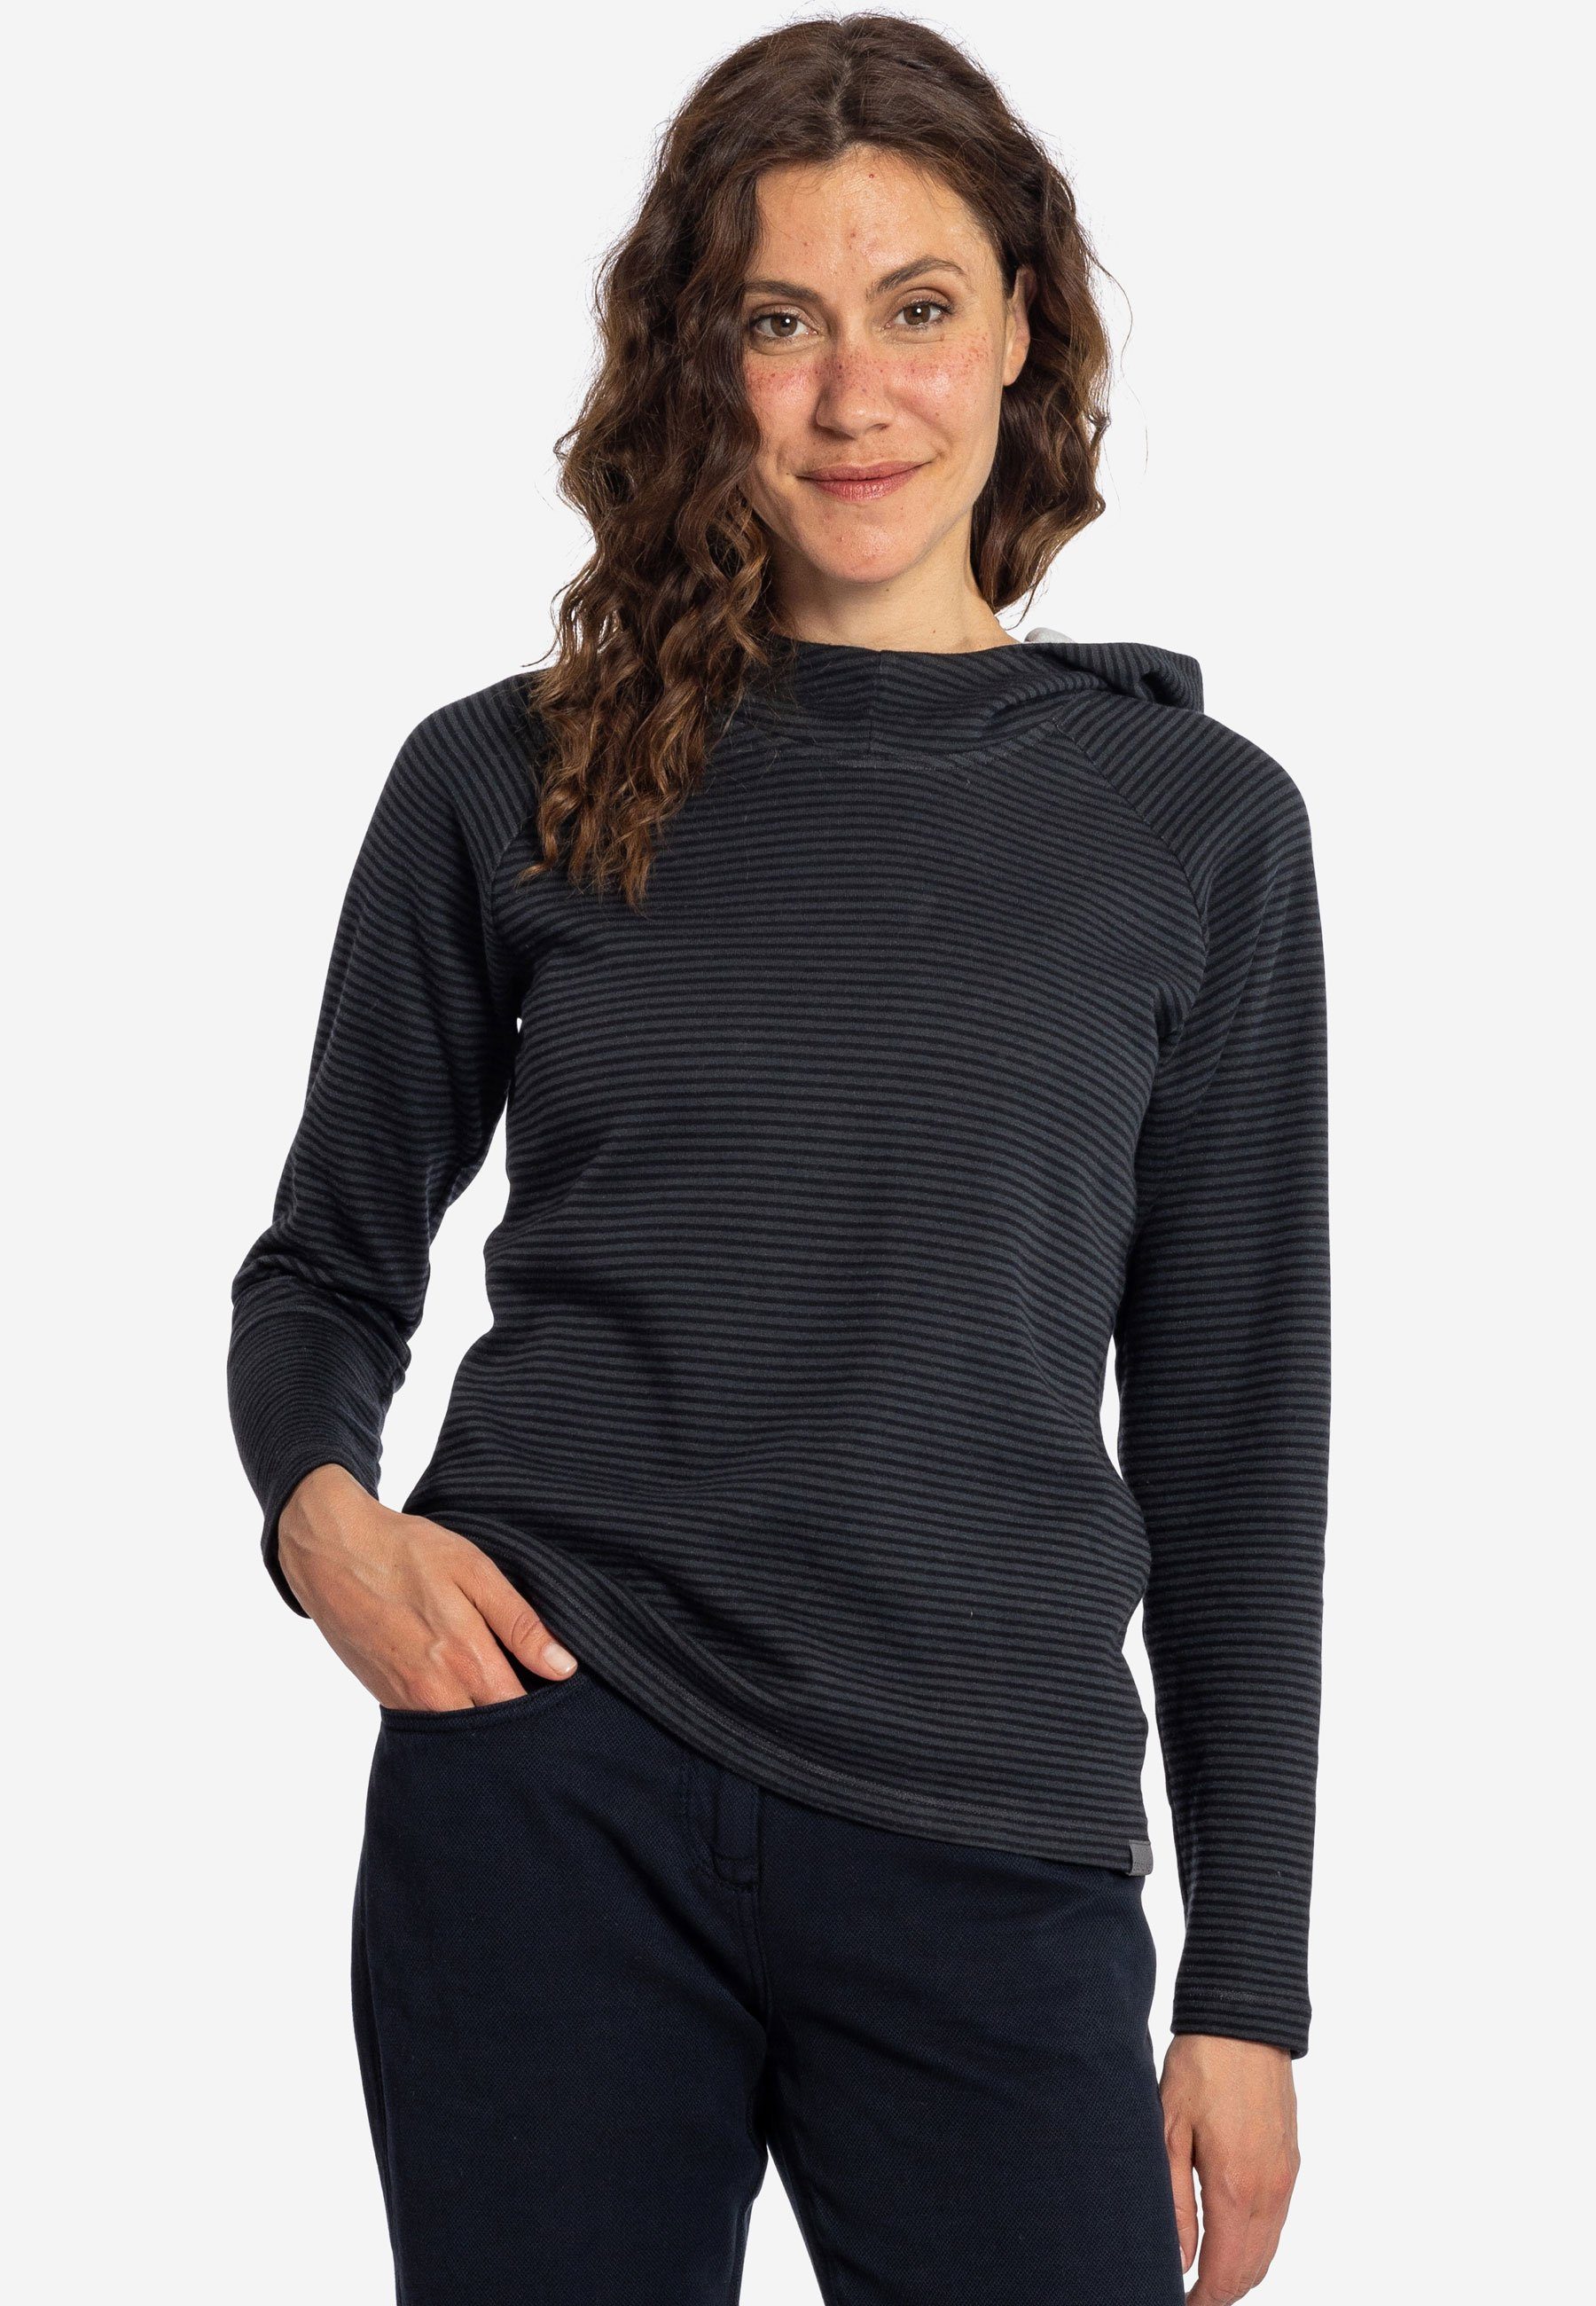 Elkline Hoodie Sweater - tailliert Streifen anthra leicht black Wetter Kapuzenpullover